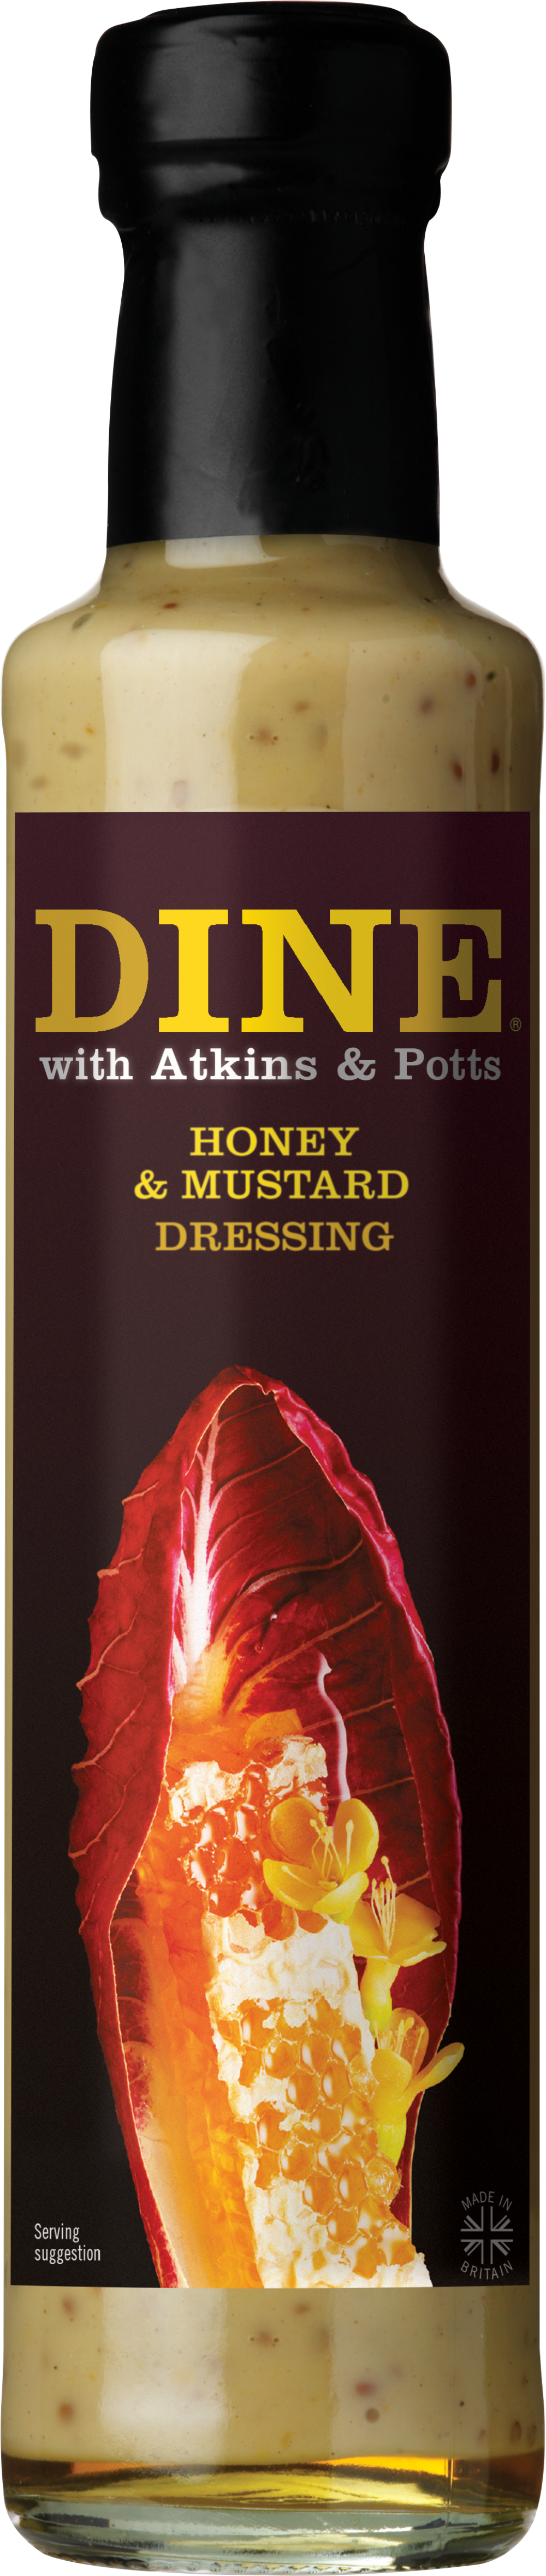 ATKINS & POTTS Honey & Mustard Dressing 220g